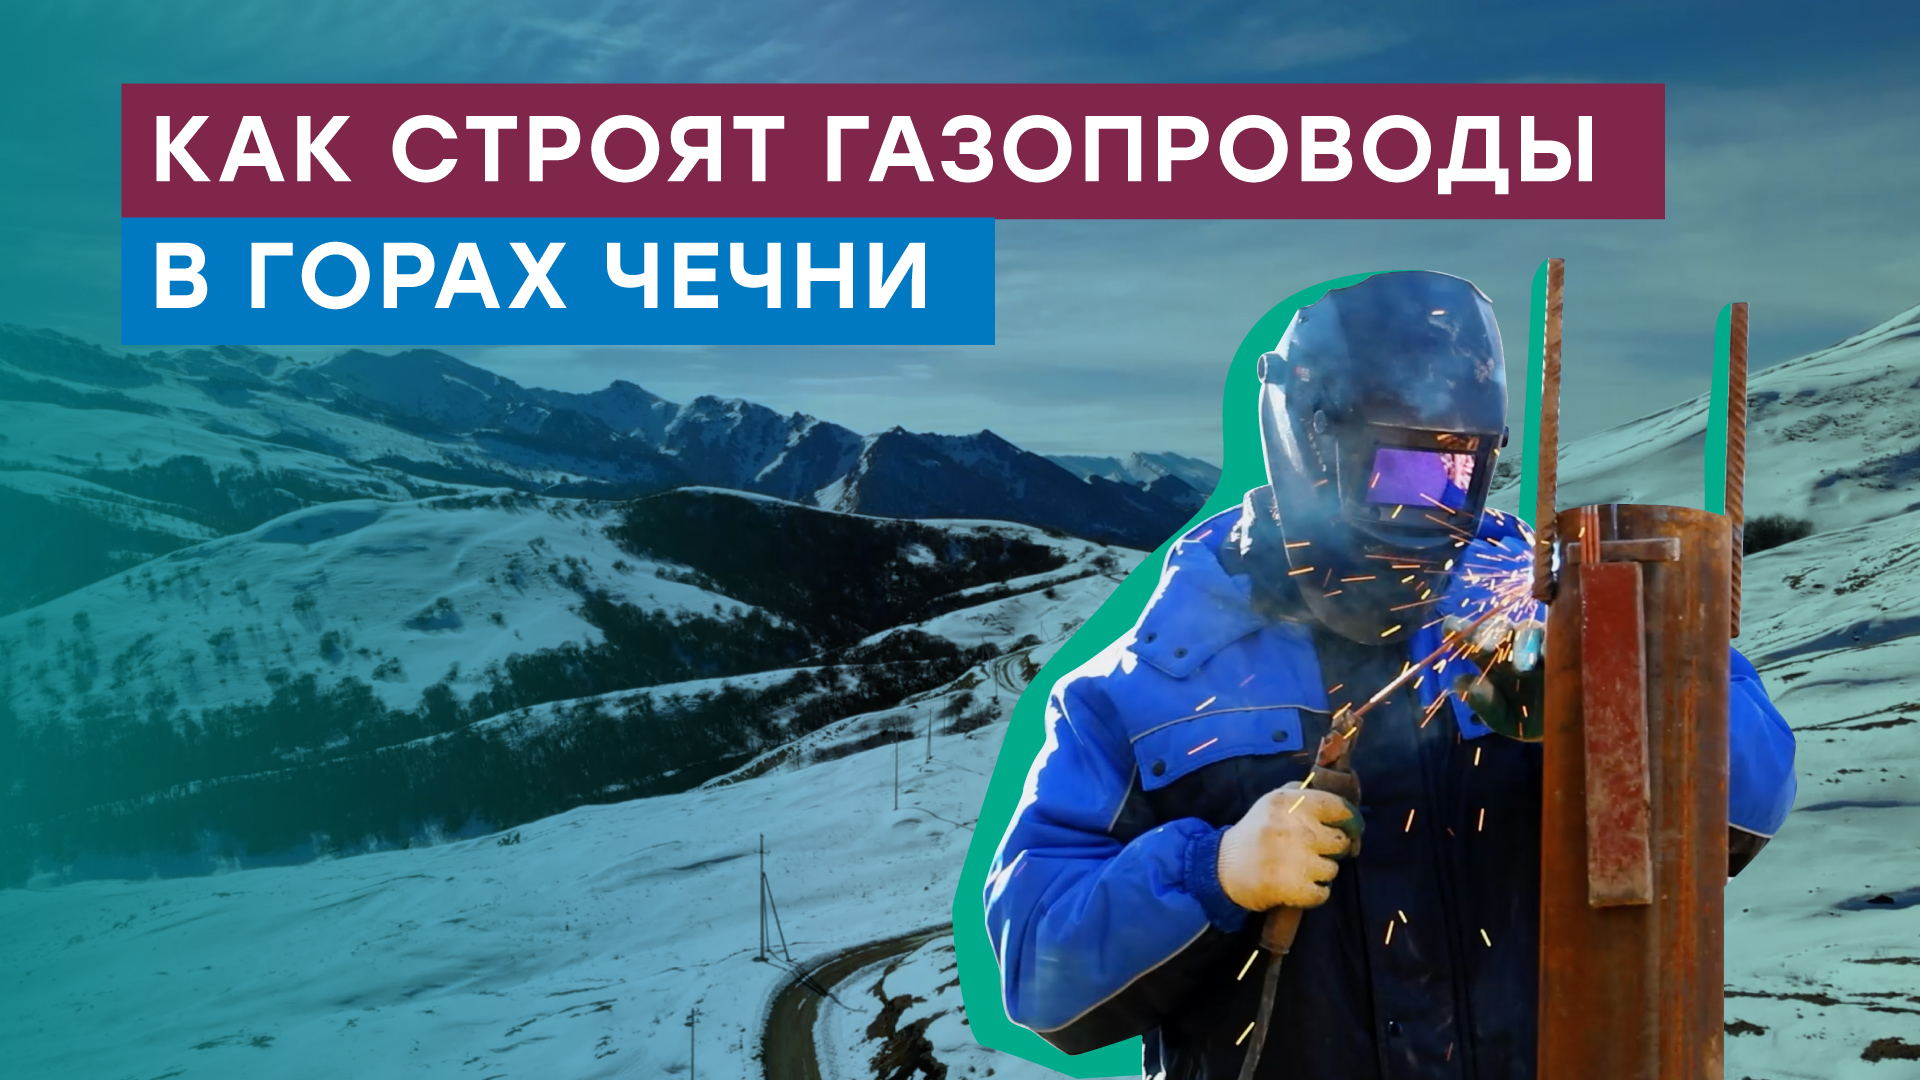 Уникальные кадры — строительство горного газопровода в Чеченской Республике